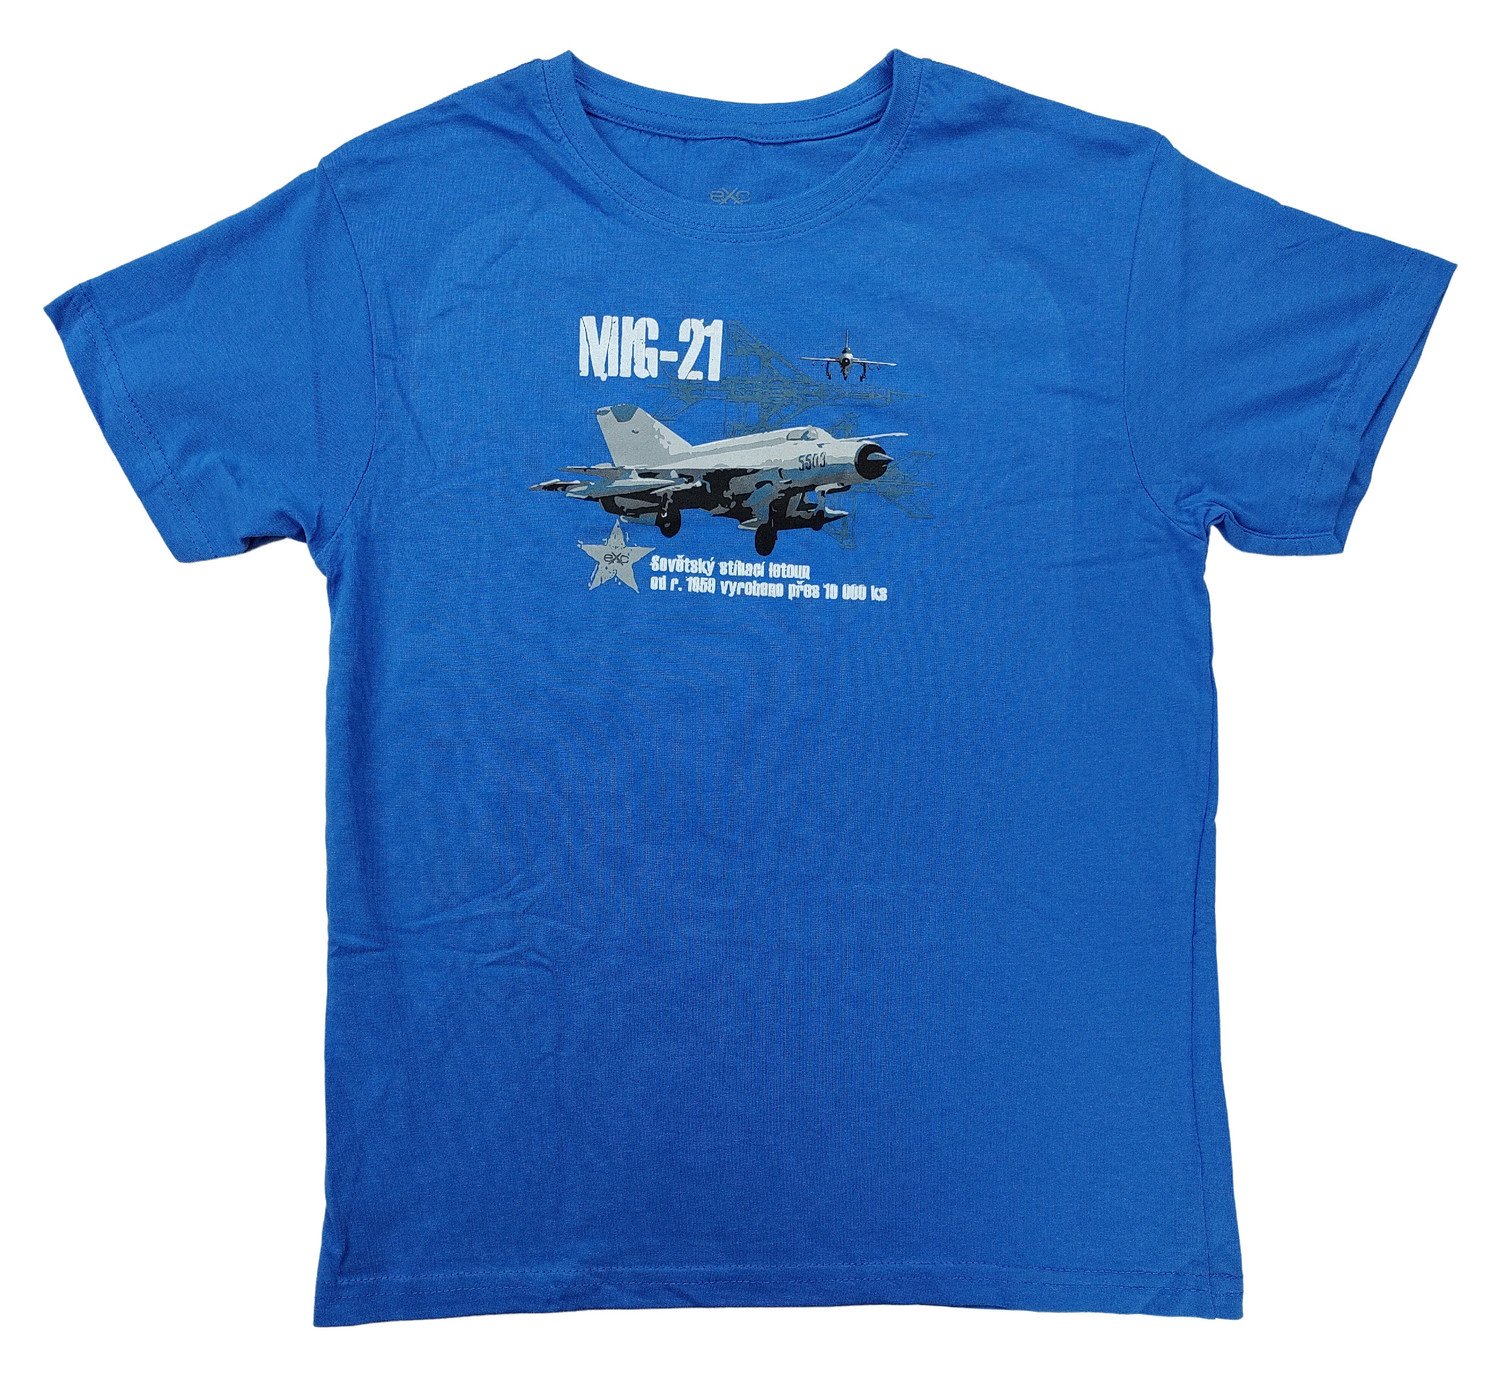 Triko dětské s potiskem MIG-21 sovětský stíhací letoun Mikojan-Gurevič modré EXC® Vyberte velikost: 122